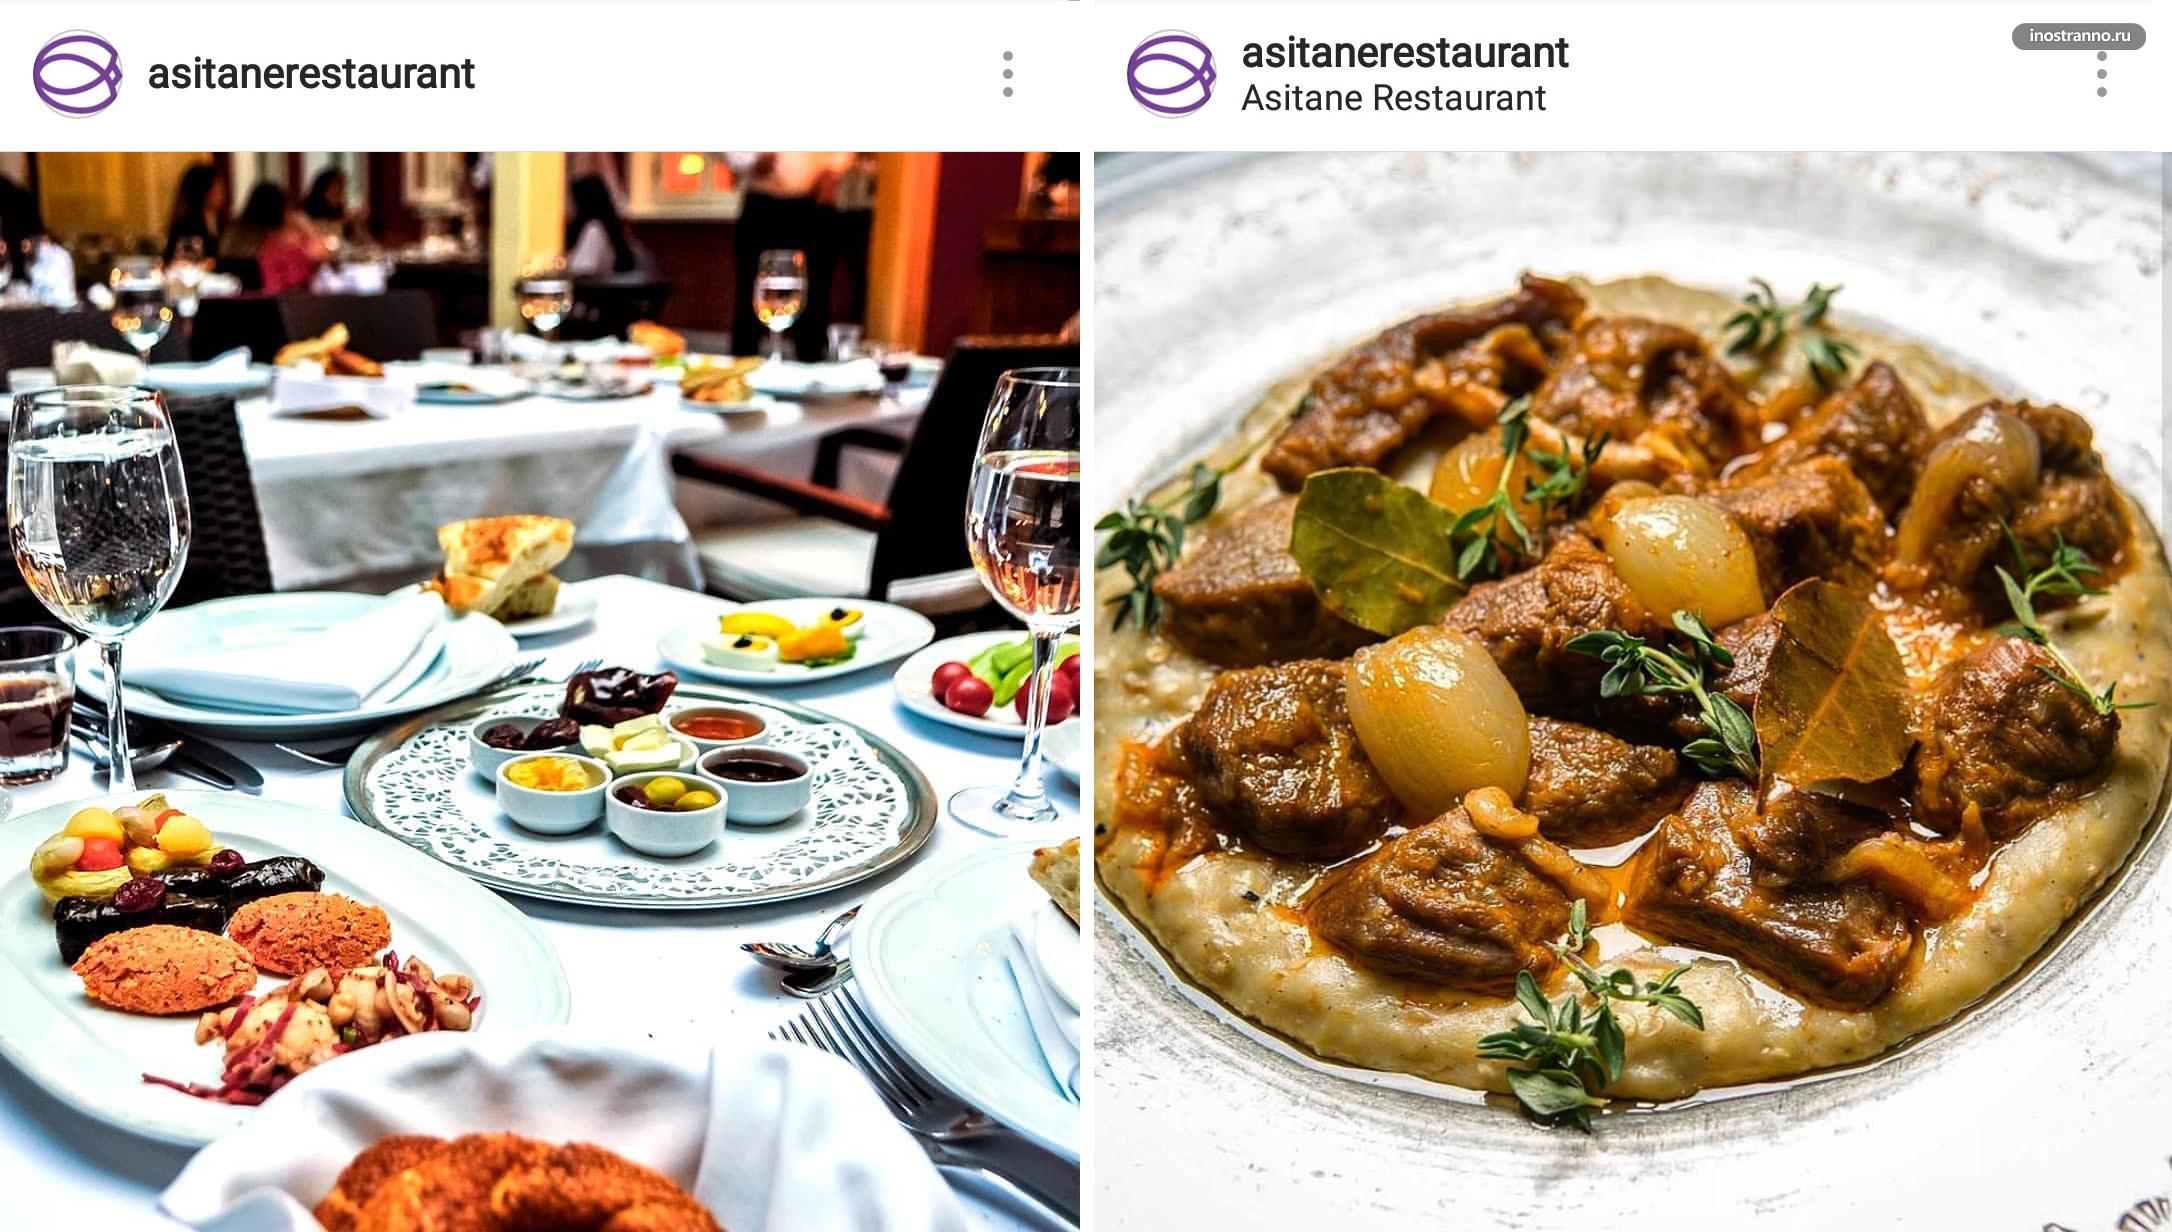 Asitane красивый ресторан традиционной турецкой кухни в Стамбуле